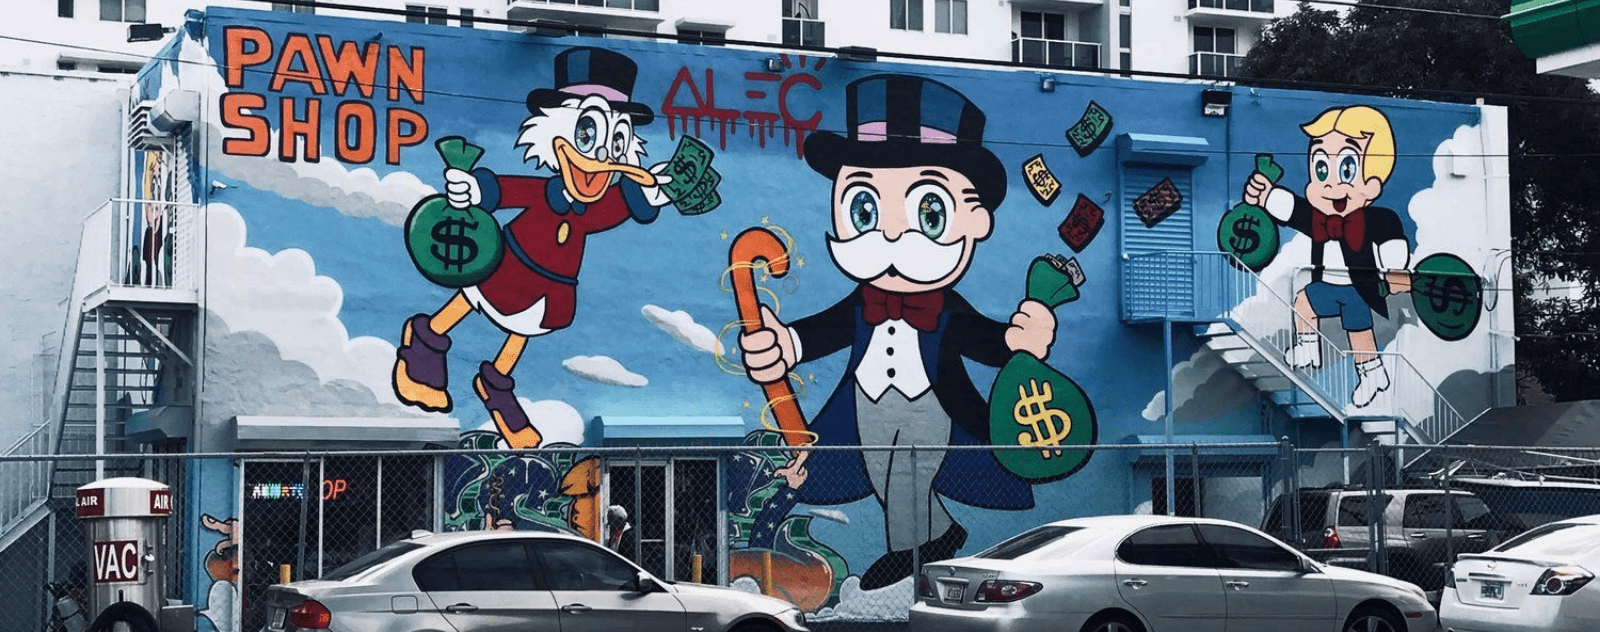 Alec Monopoly Graffiti